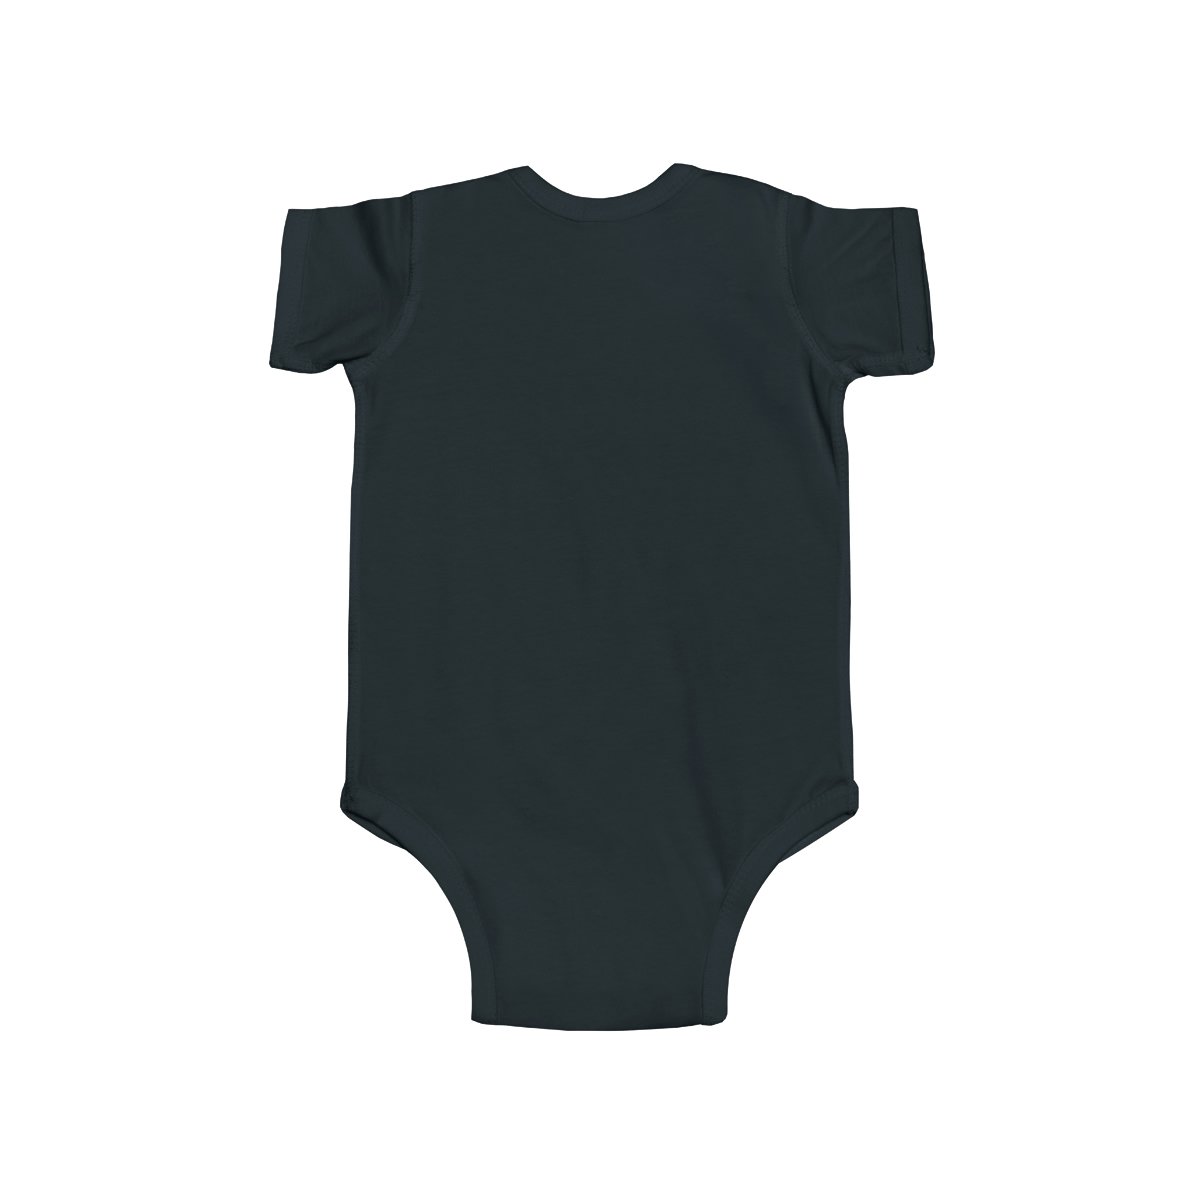 Sanctuary International – Start Walkin’ Infant Fine Jersey Bodysuit